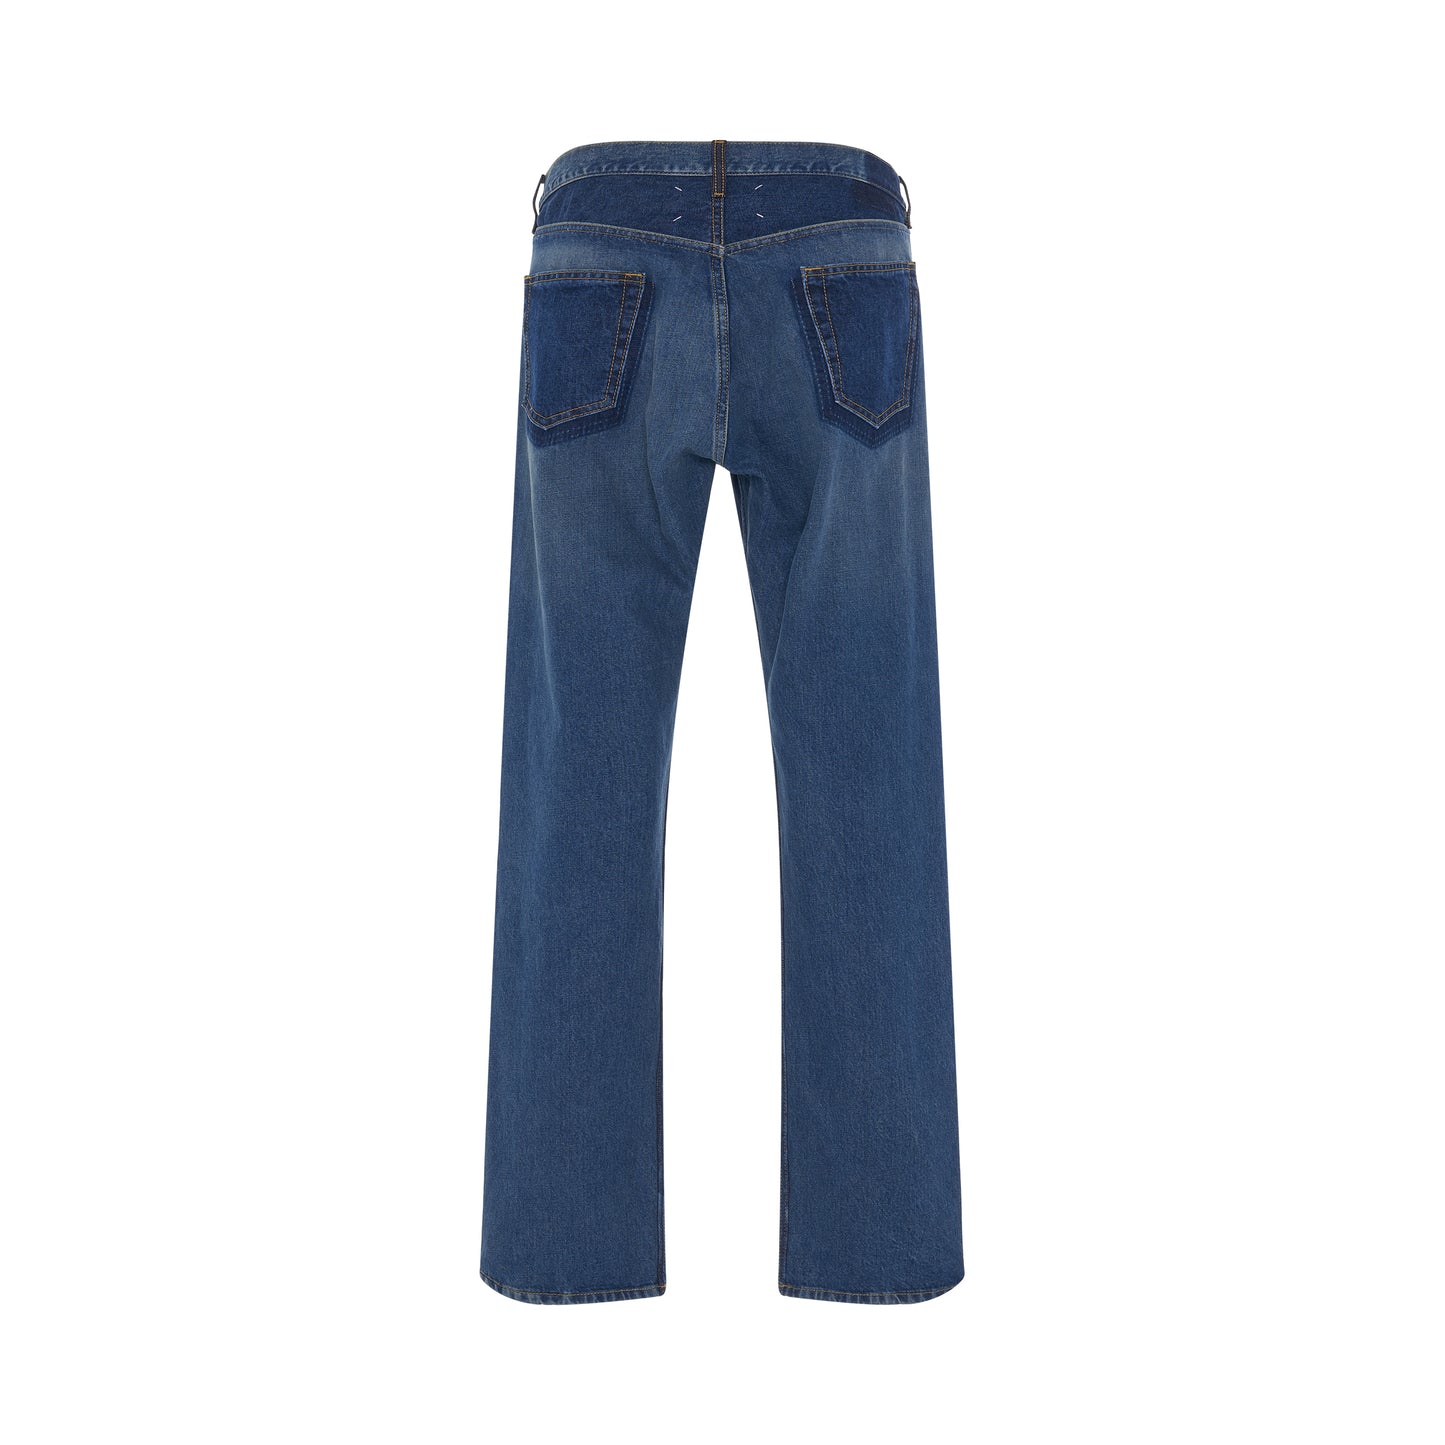 5 Pockets Denim Jeans in Combo Denim